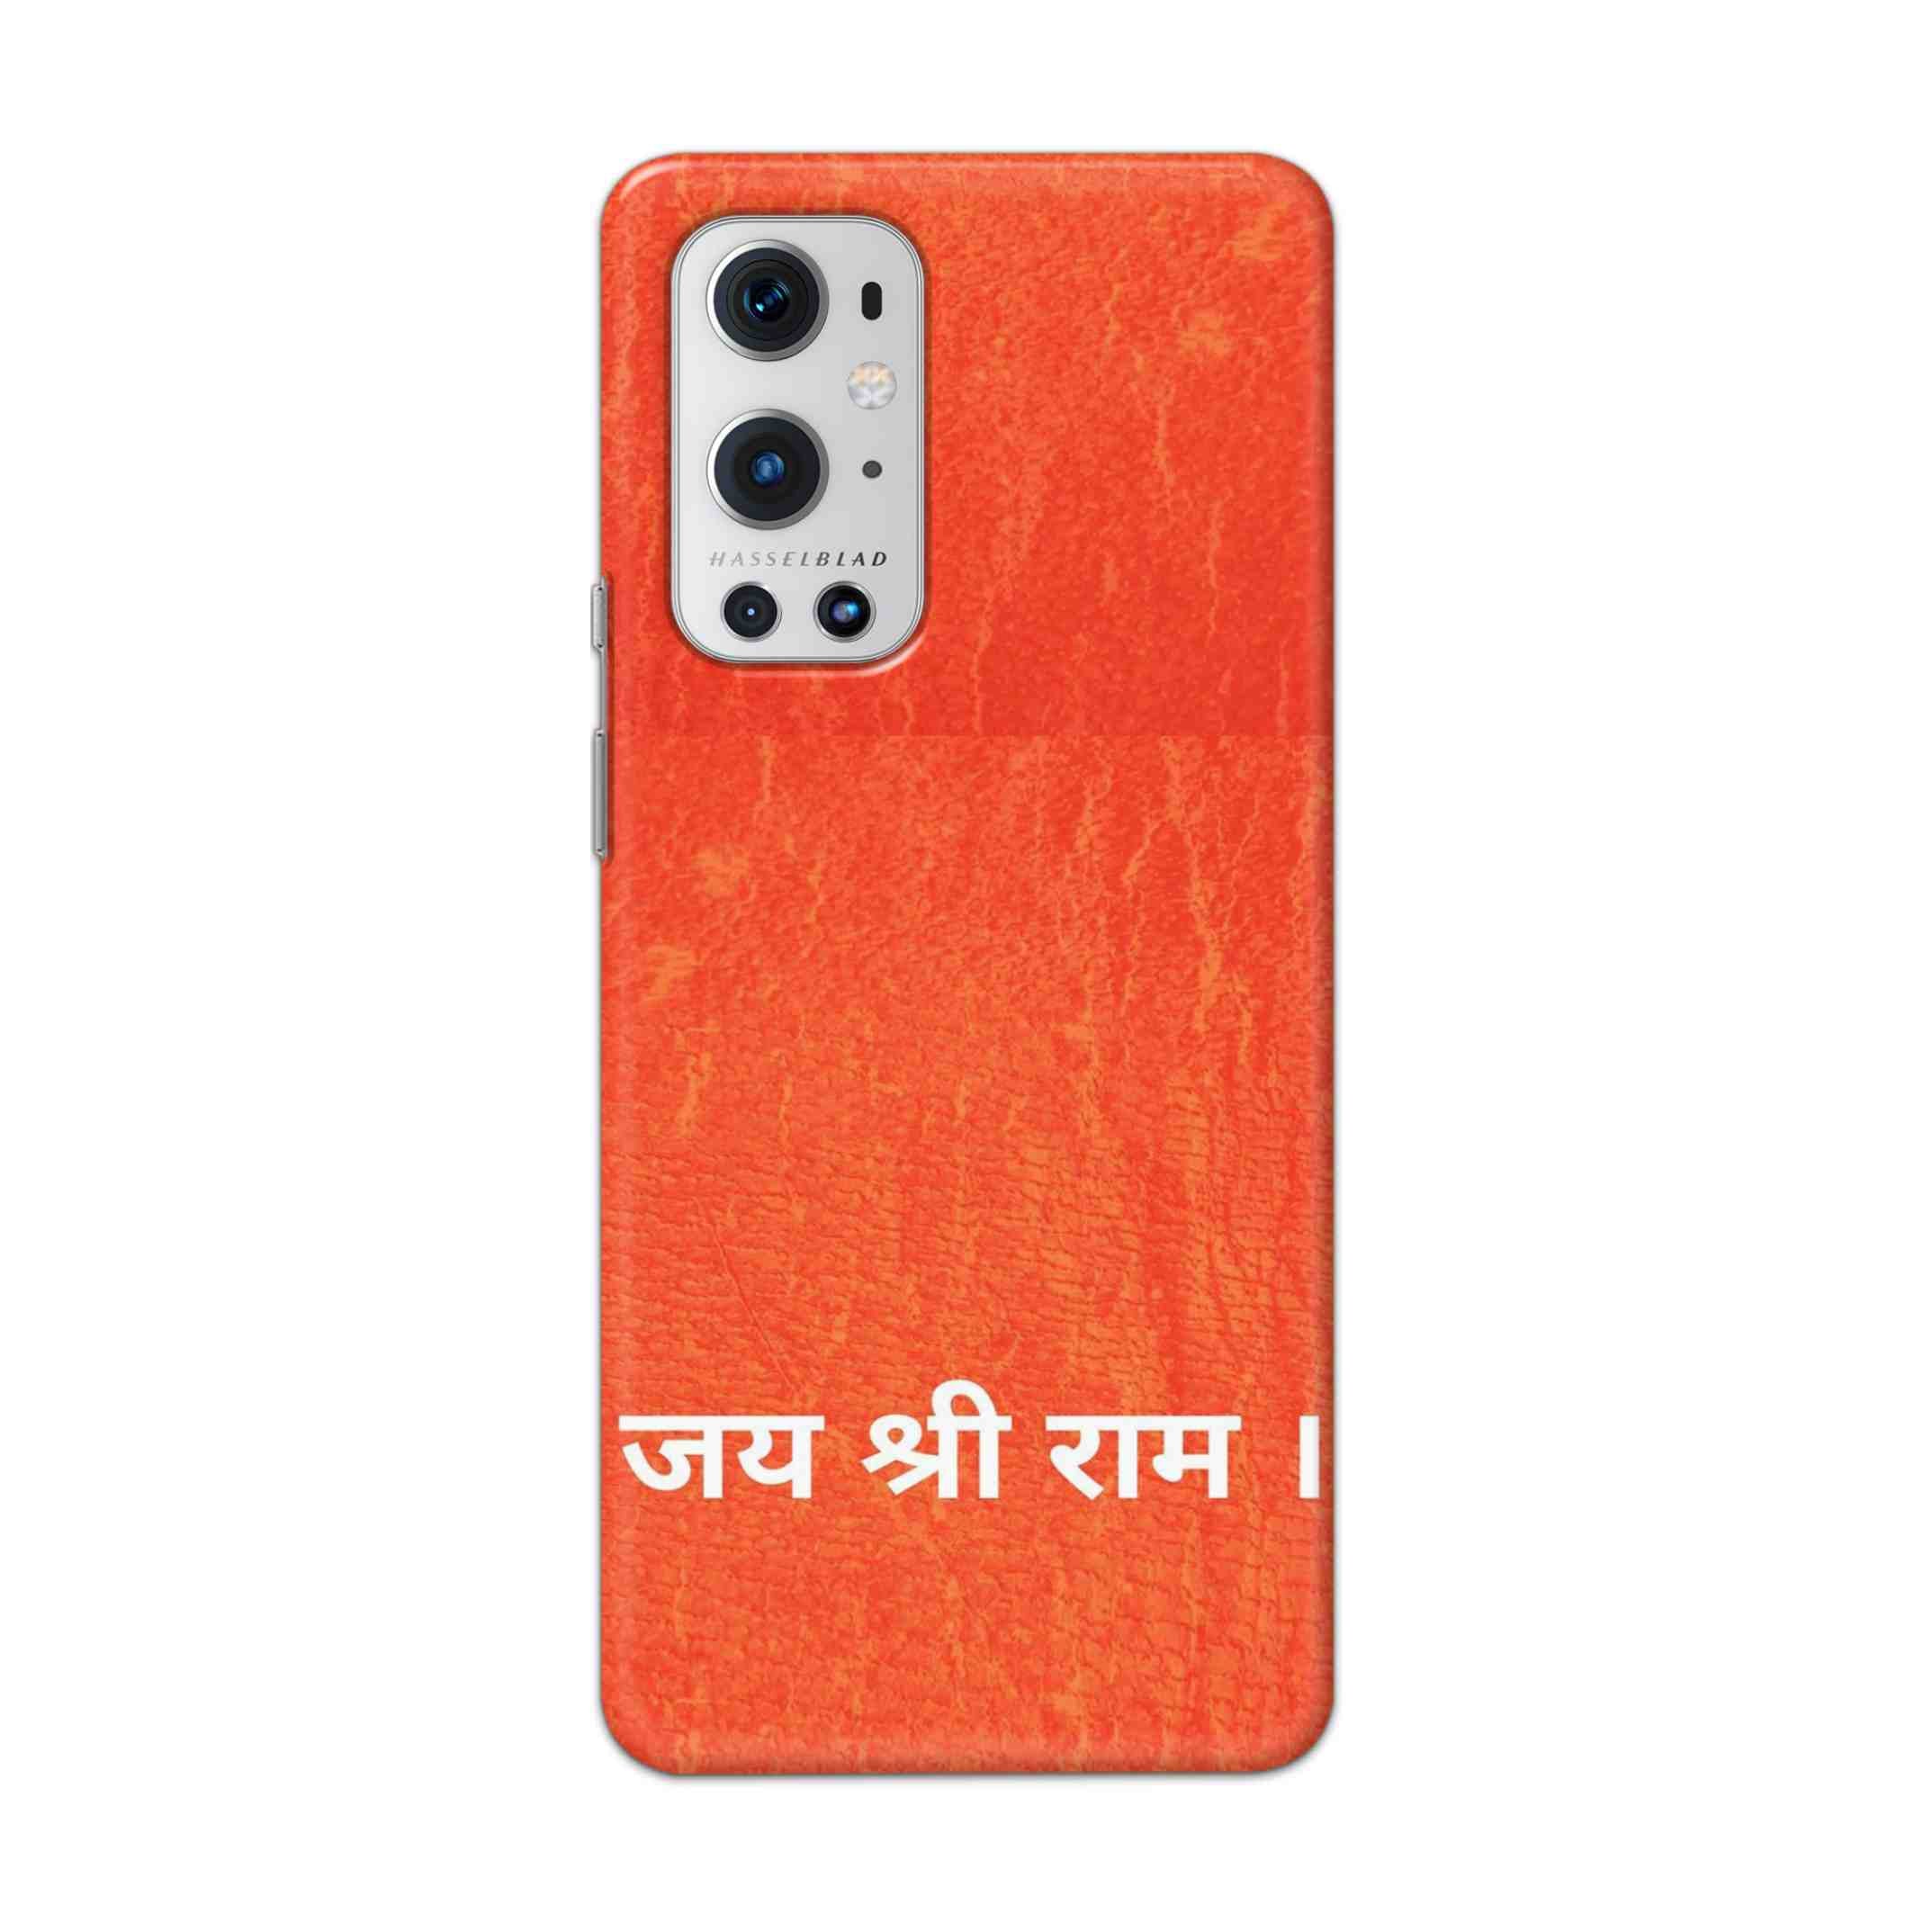 Buy Jai Shree Ram Hard Back Mobile Phone Case Cover For OnePlus 9 Pro Online